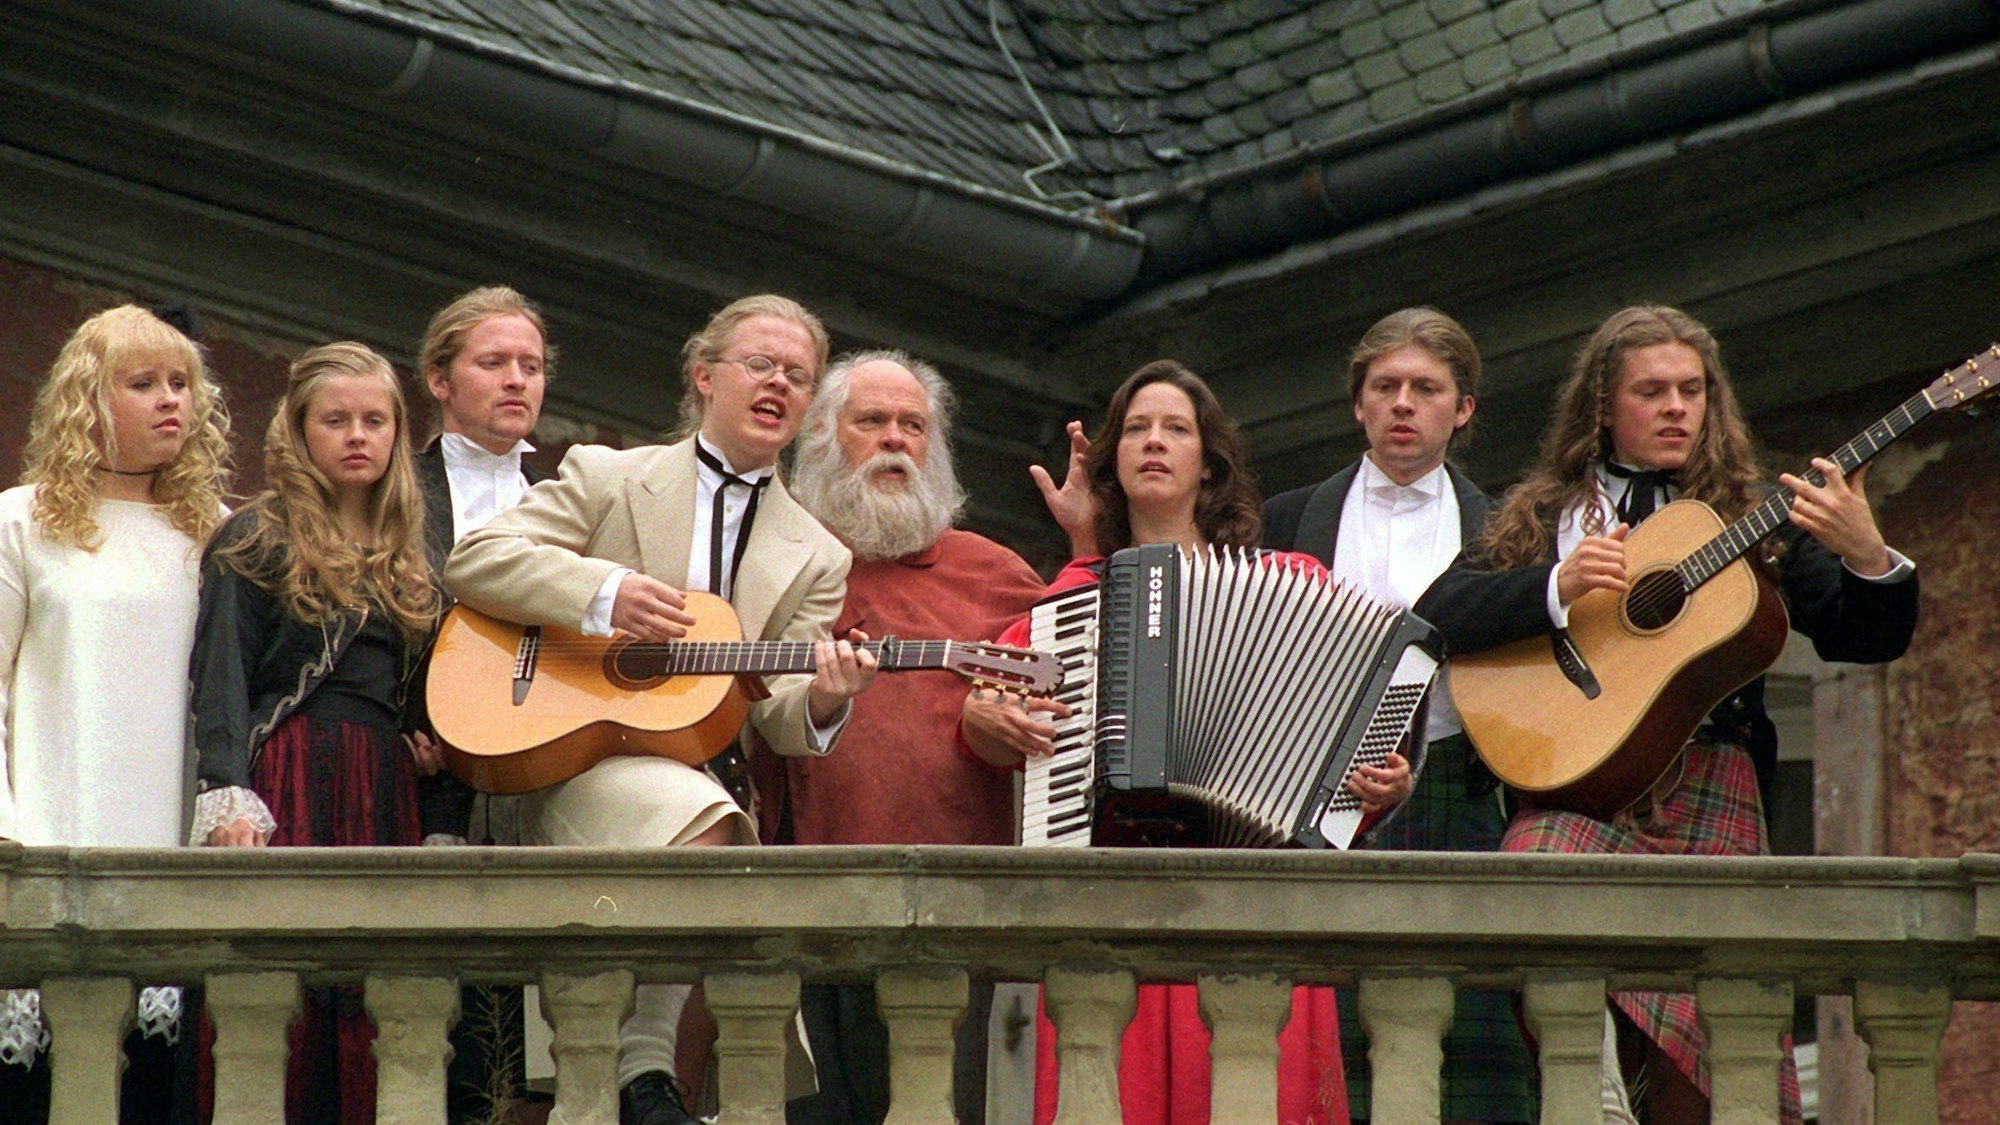 Maite Barby, Joey, Angelo, Vater Dan, Kathy, John und Paddy Kelly 1998 auf Schloss Gymnich im Erftkreis.